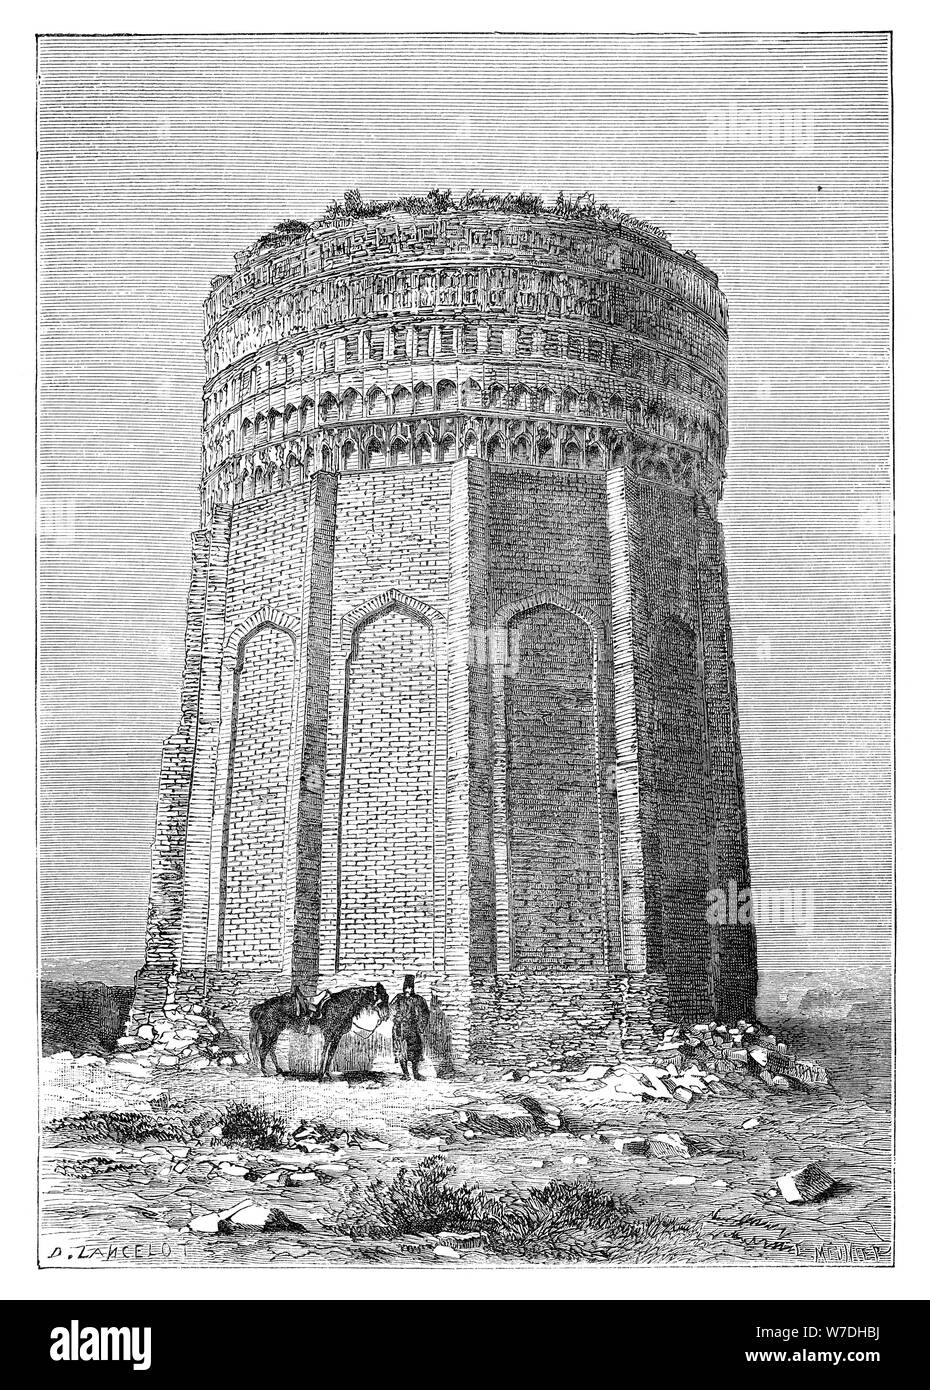 Der Turm von Meimandan, Persien (Iran), 1895. Artist: Unbekannt Stockfoto